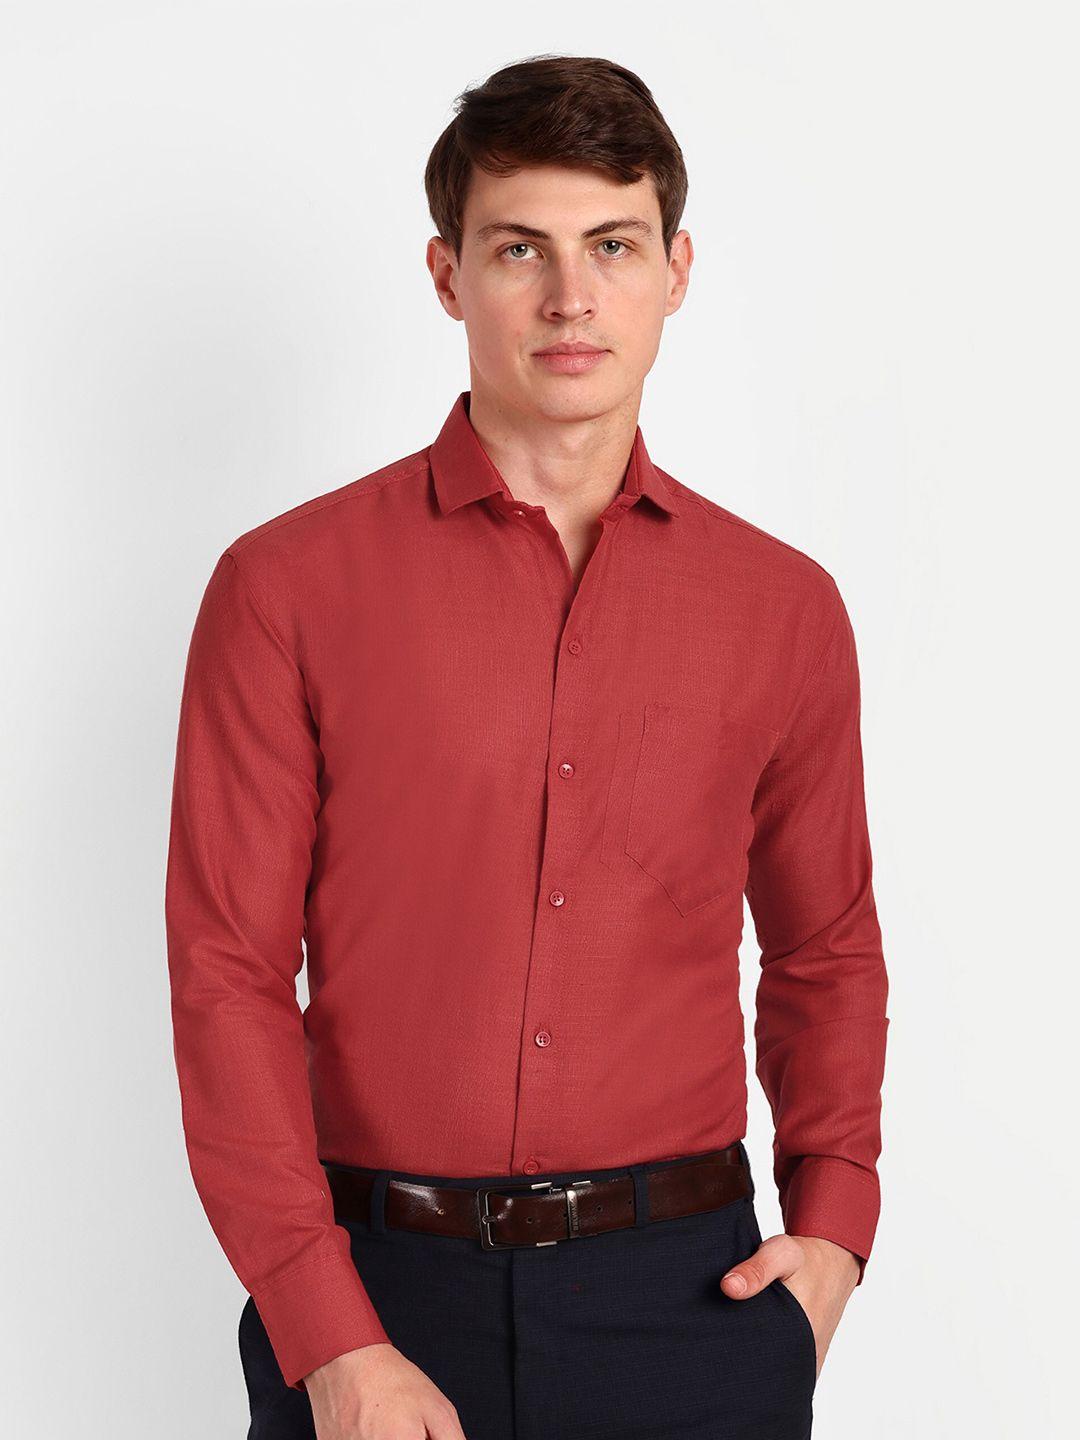 colorwings men red comfort semi sheer formal shirt